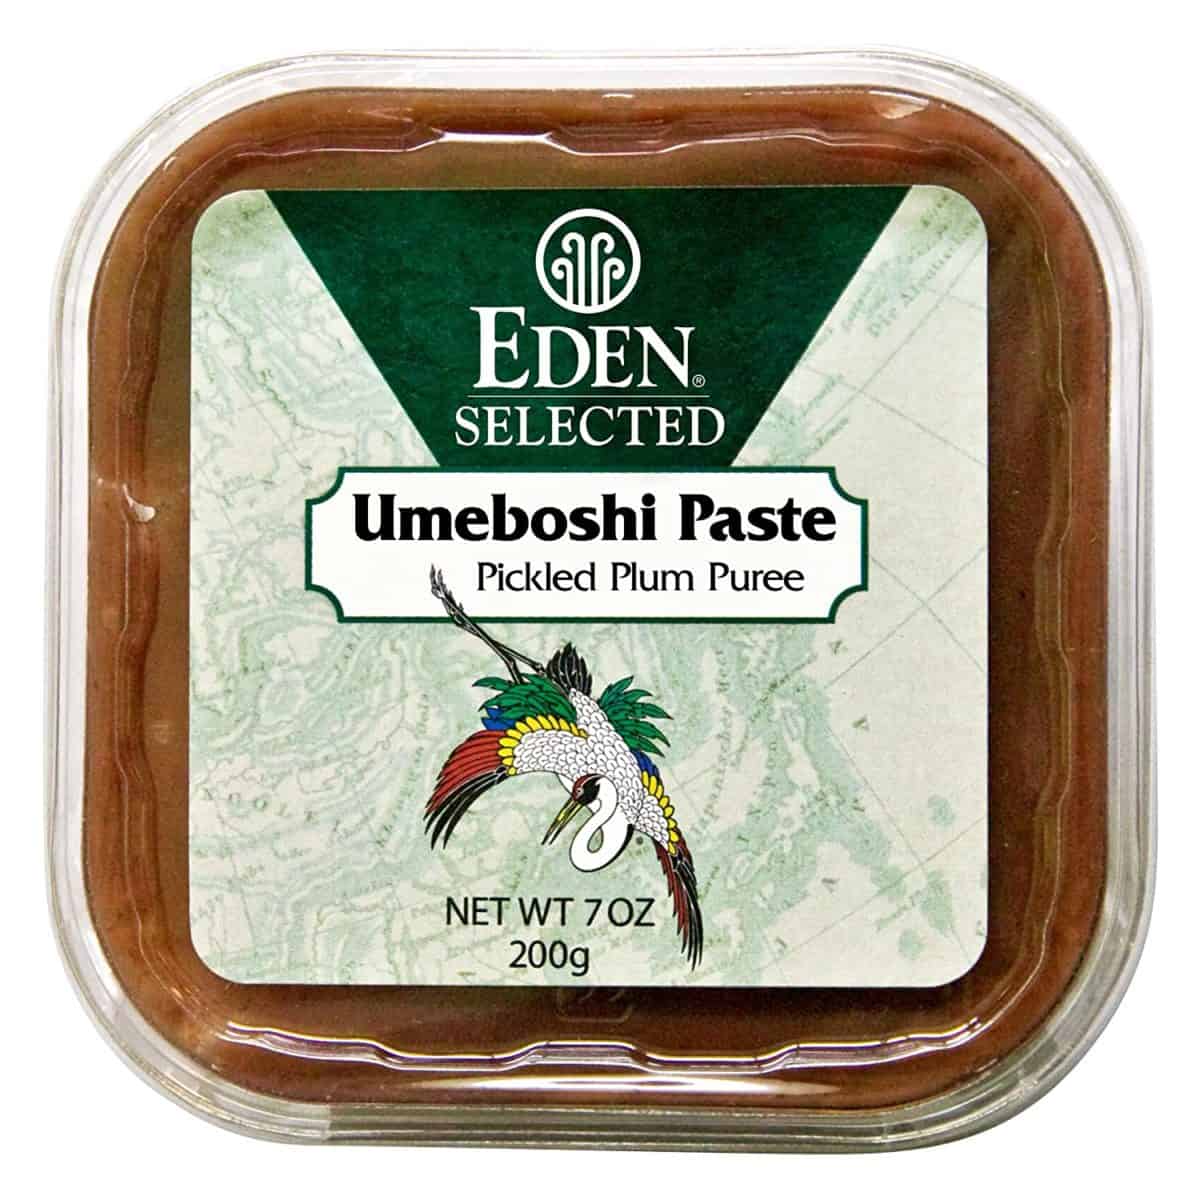 Pâte Eden umeboshi à utiliser dans la cuisine, les sauces et les vinaigrettes